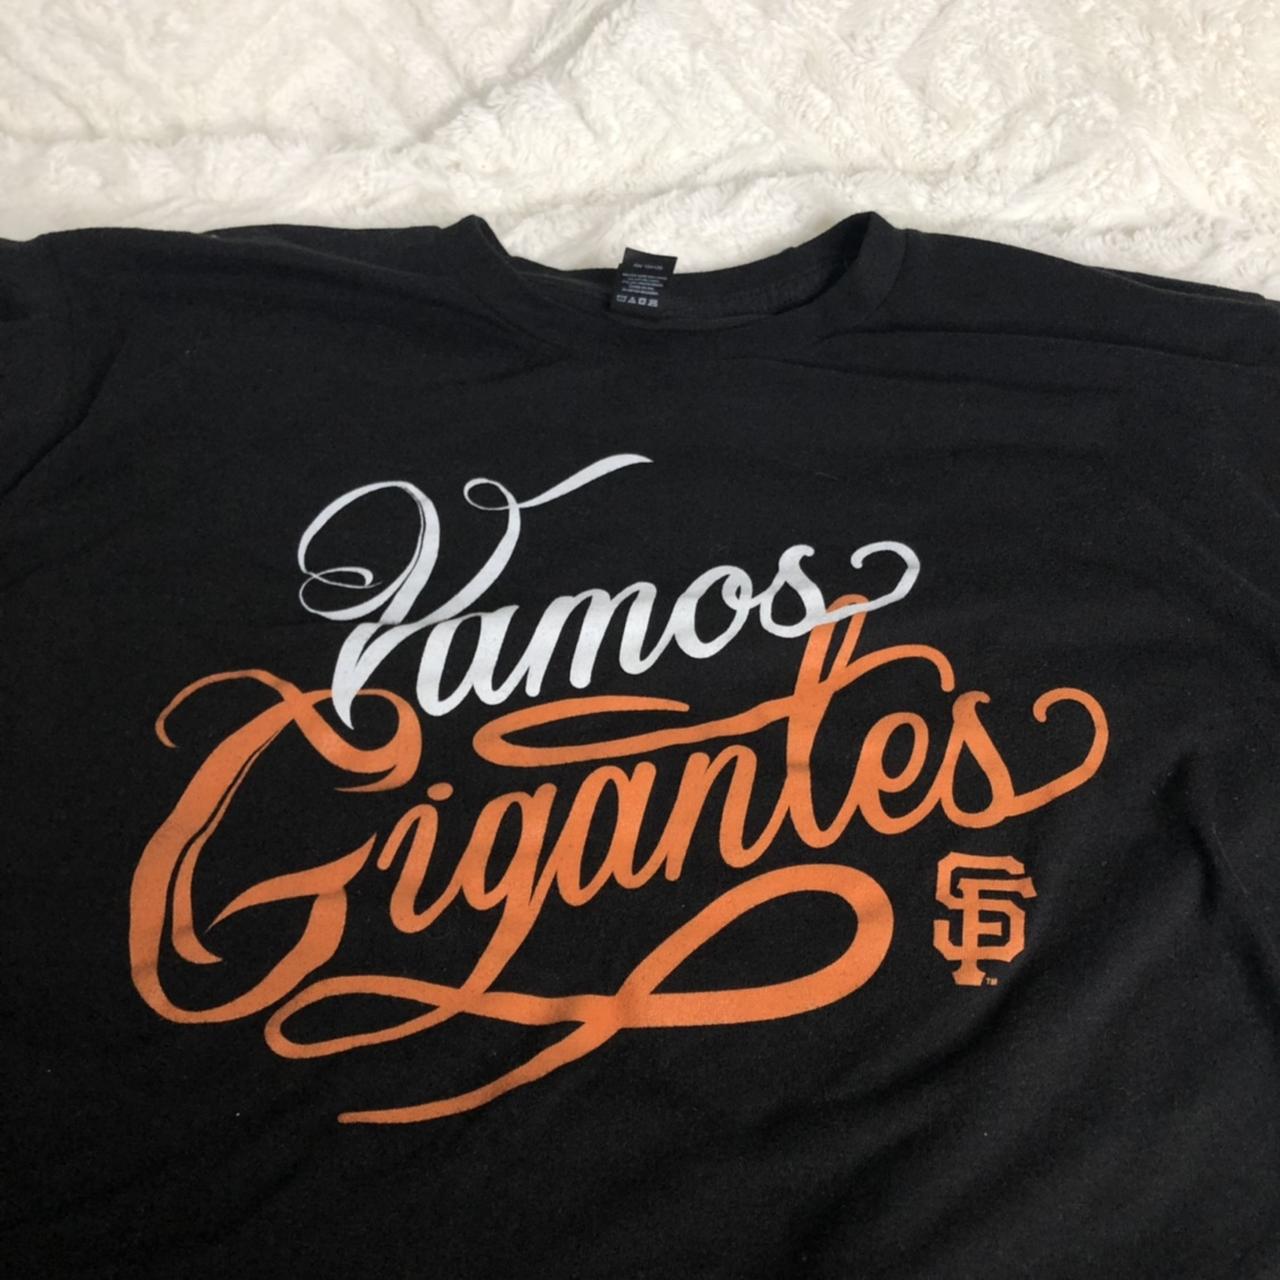 San Francisco Giants Fanatics Branded Vamos Gigantes Mexico City